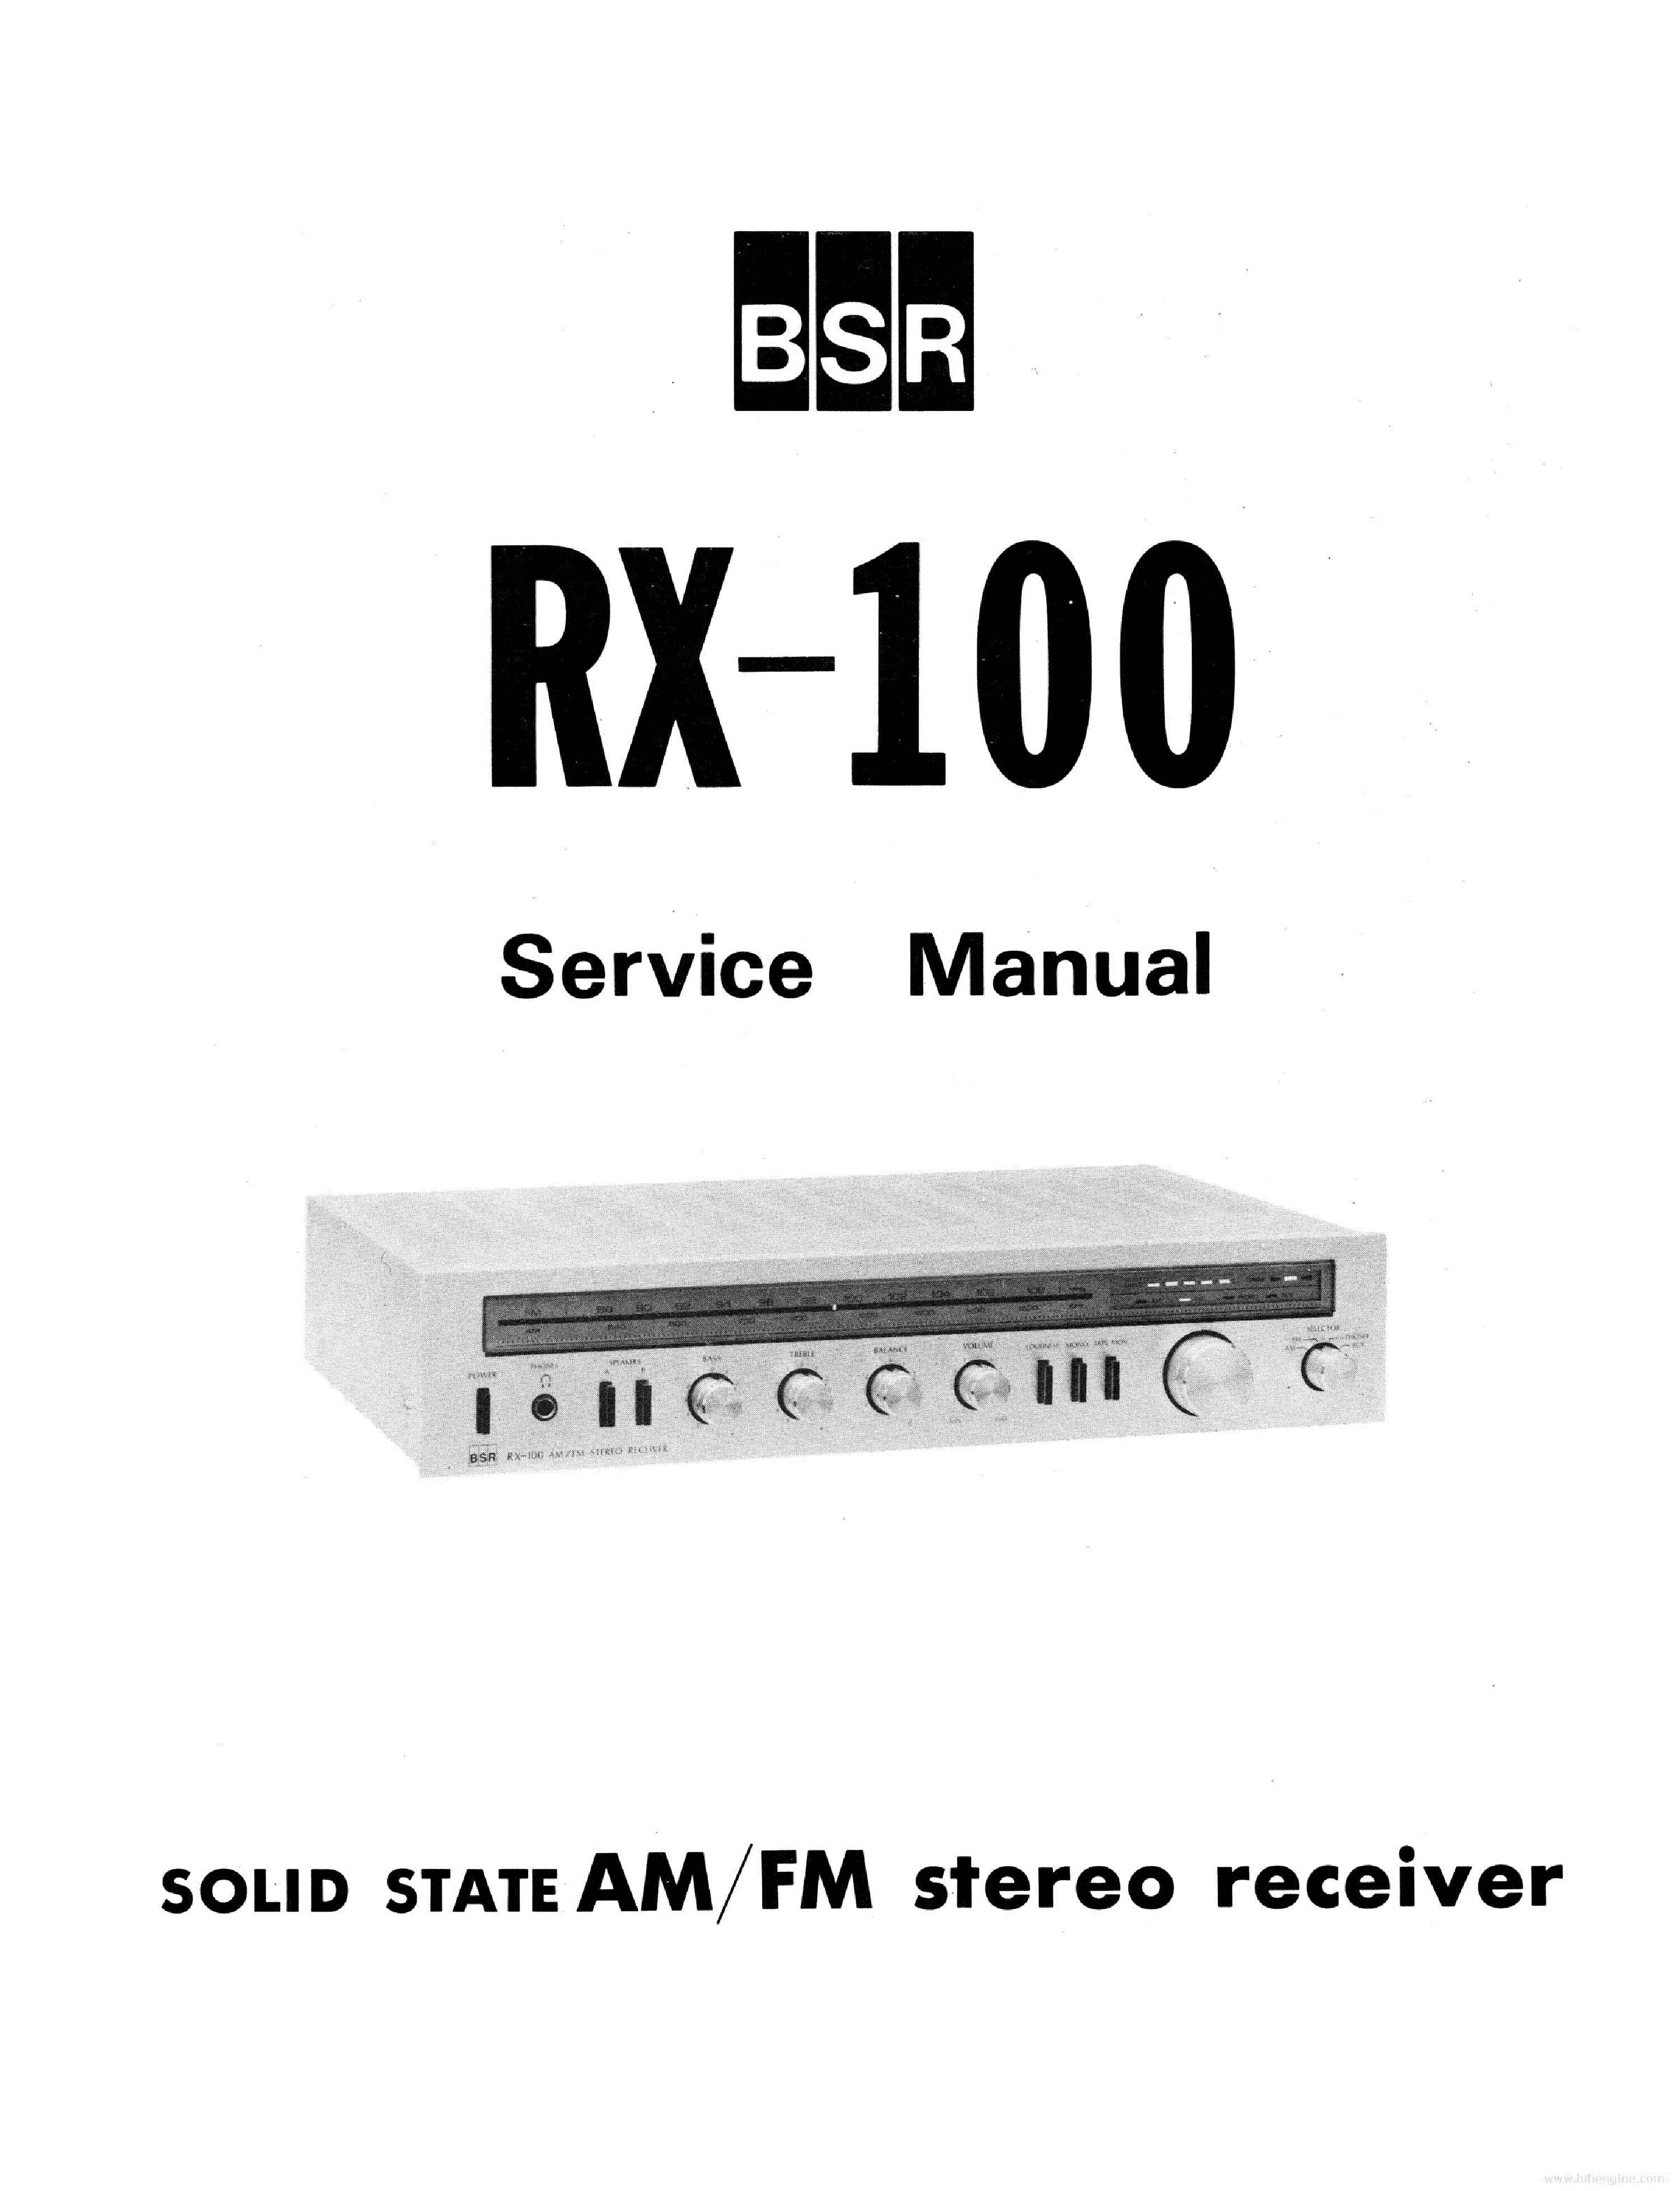 BSR RX-100